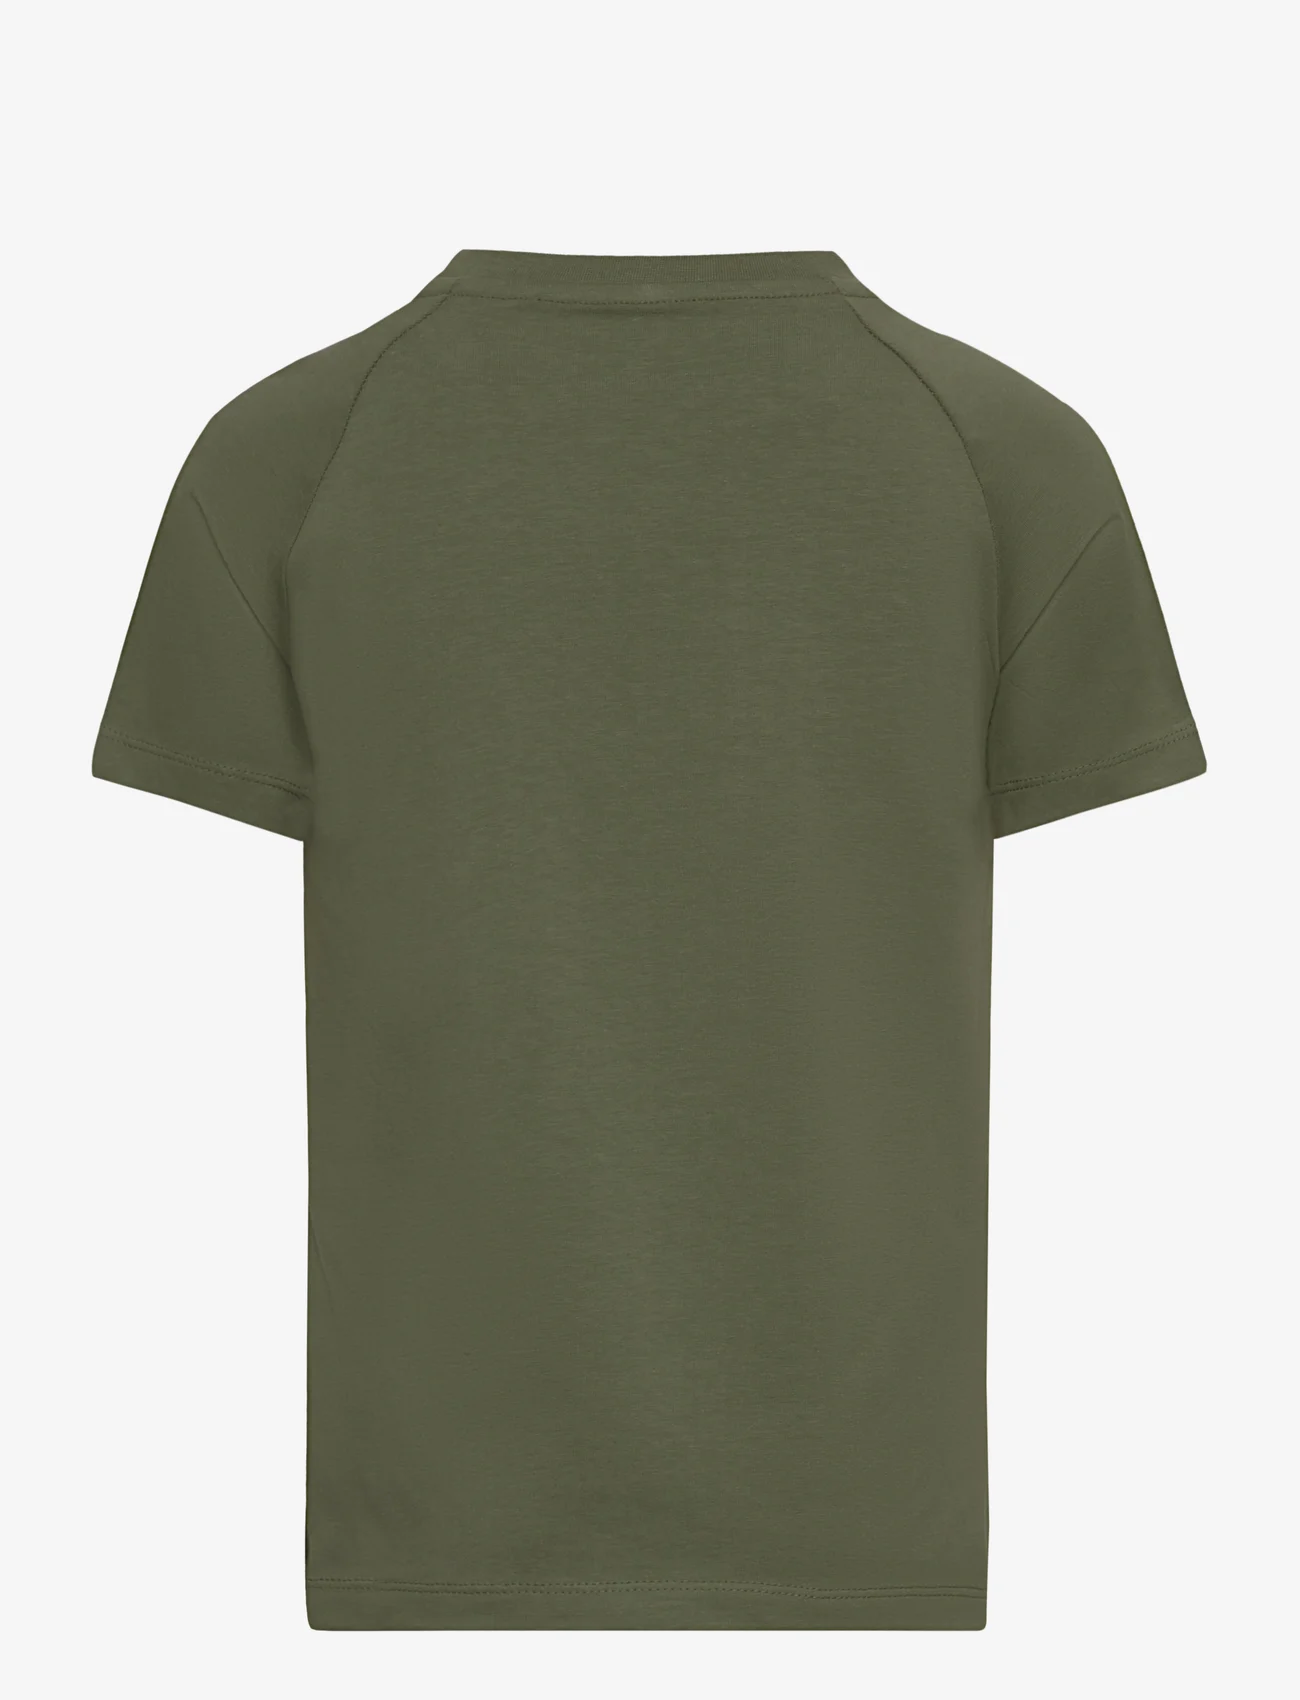 MeToo - T-shirt SS - lühikeste varrukatega t-särgid - four leaf clover - 1